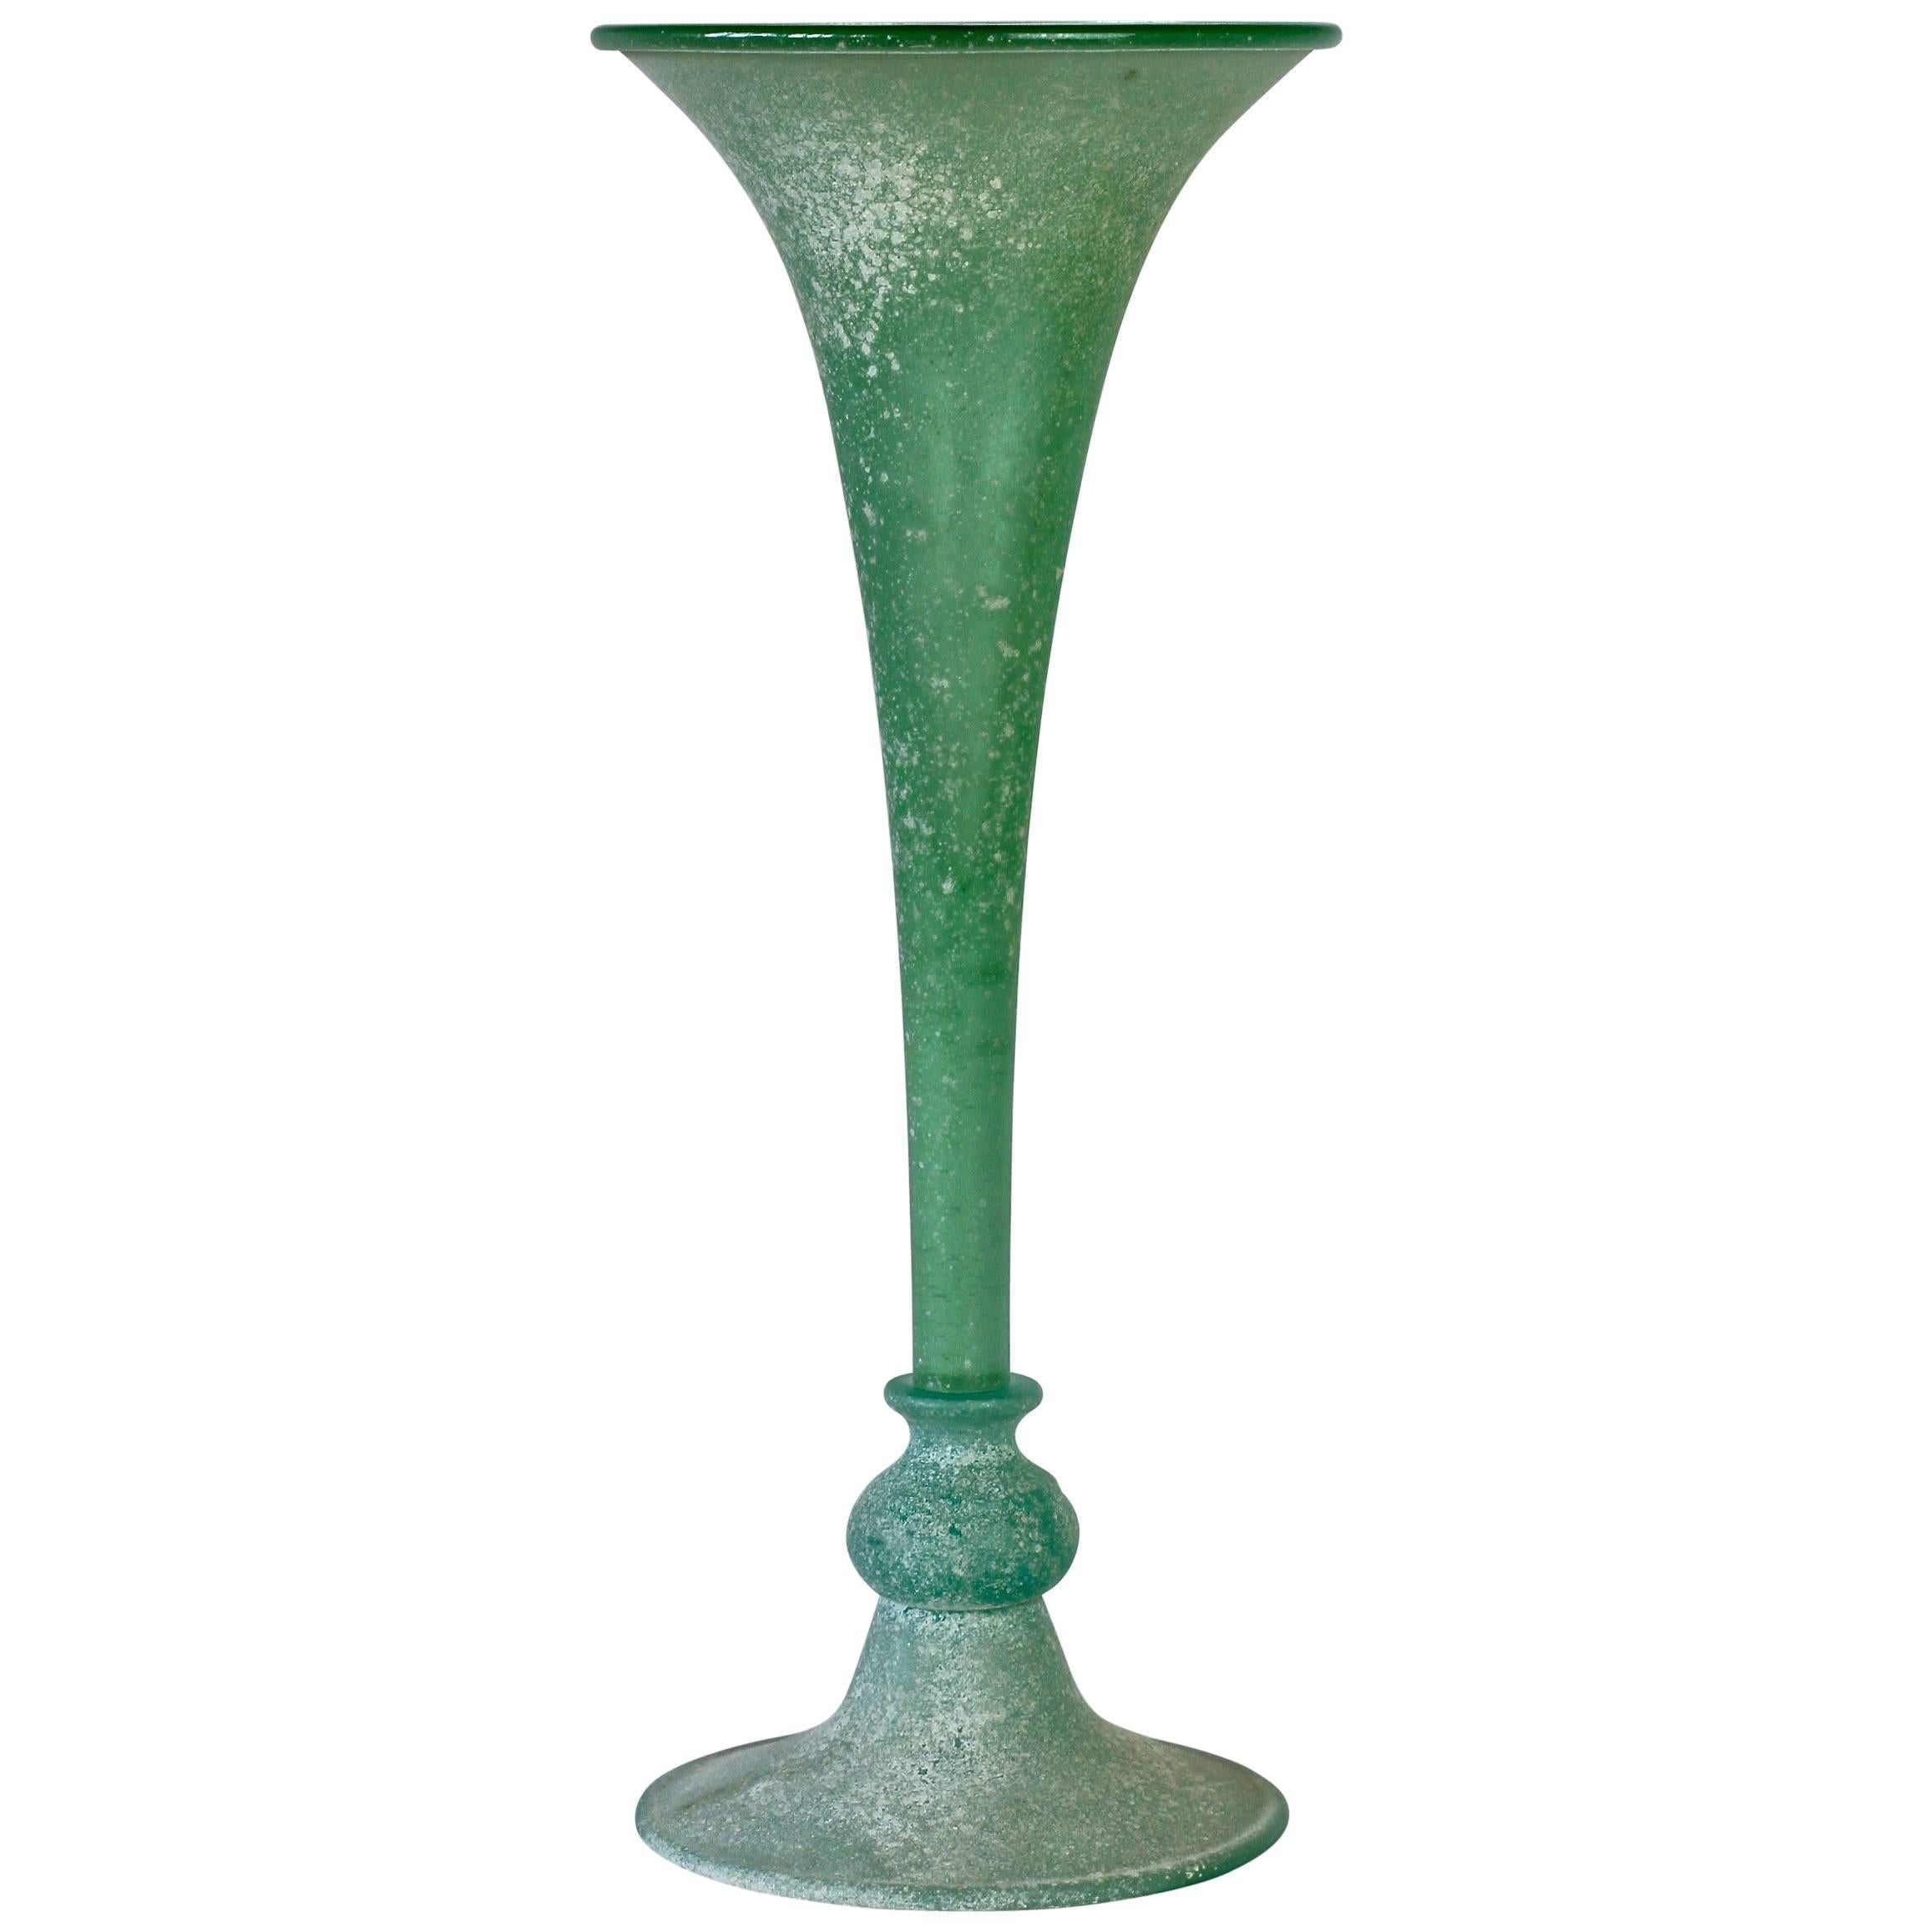 Jarrón alto acanalado verde de cristal de Murano "A Scavo" atribuido a Seguso Vetri d'Arte